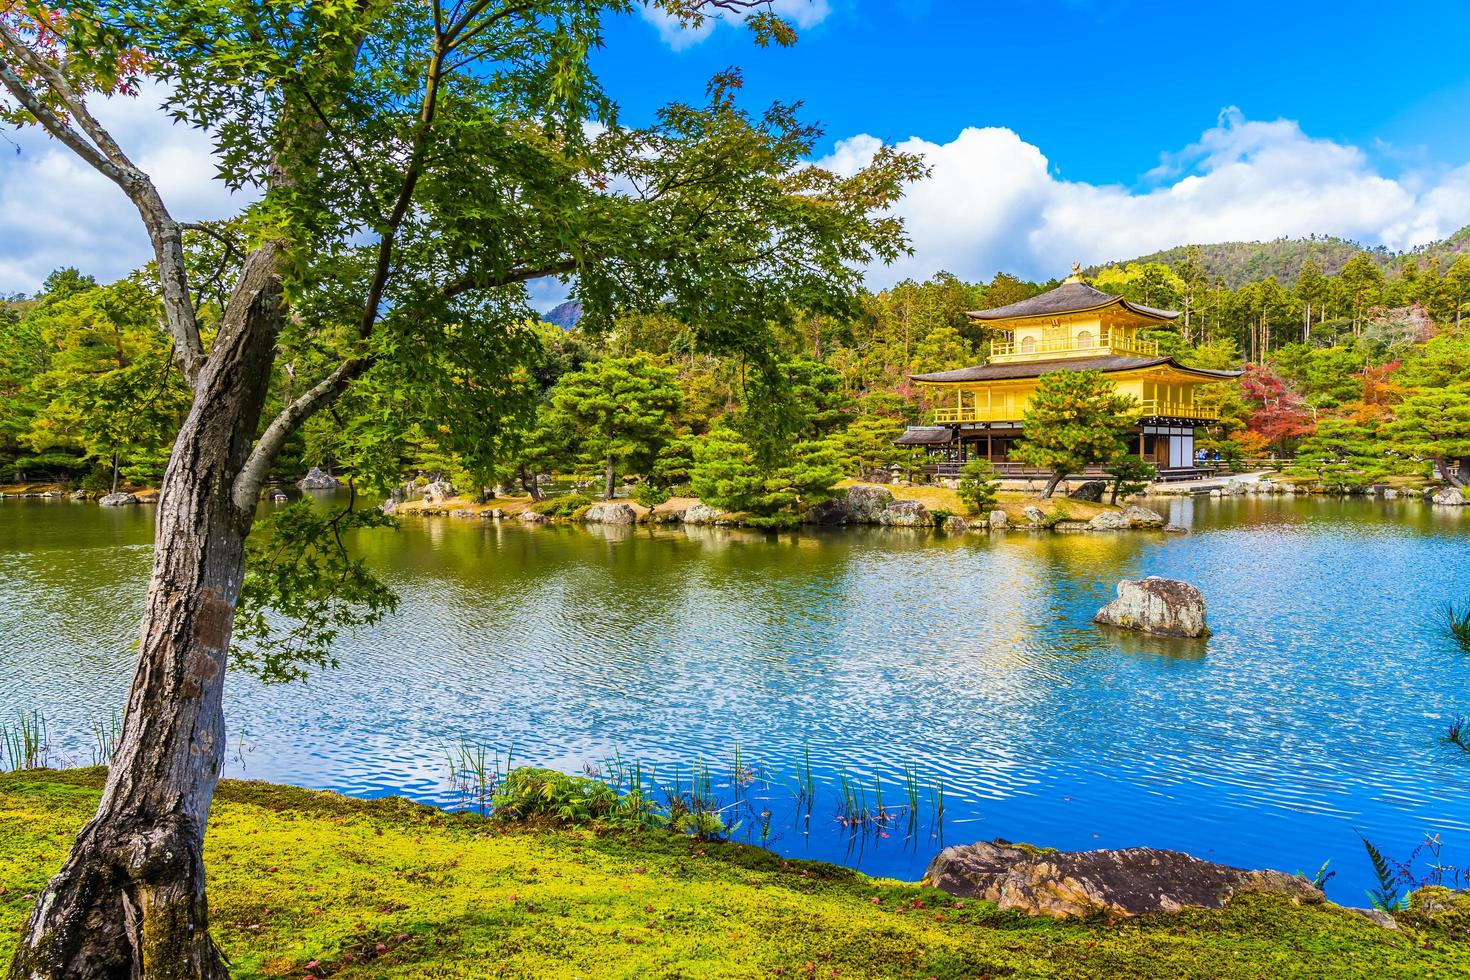 templo Kinkakuji ou o pavilhão dourado em Kyoto, Japão foto